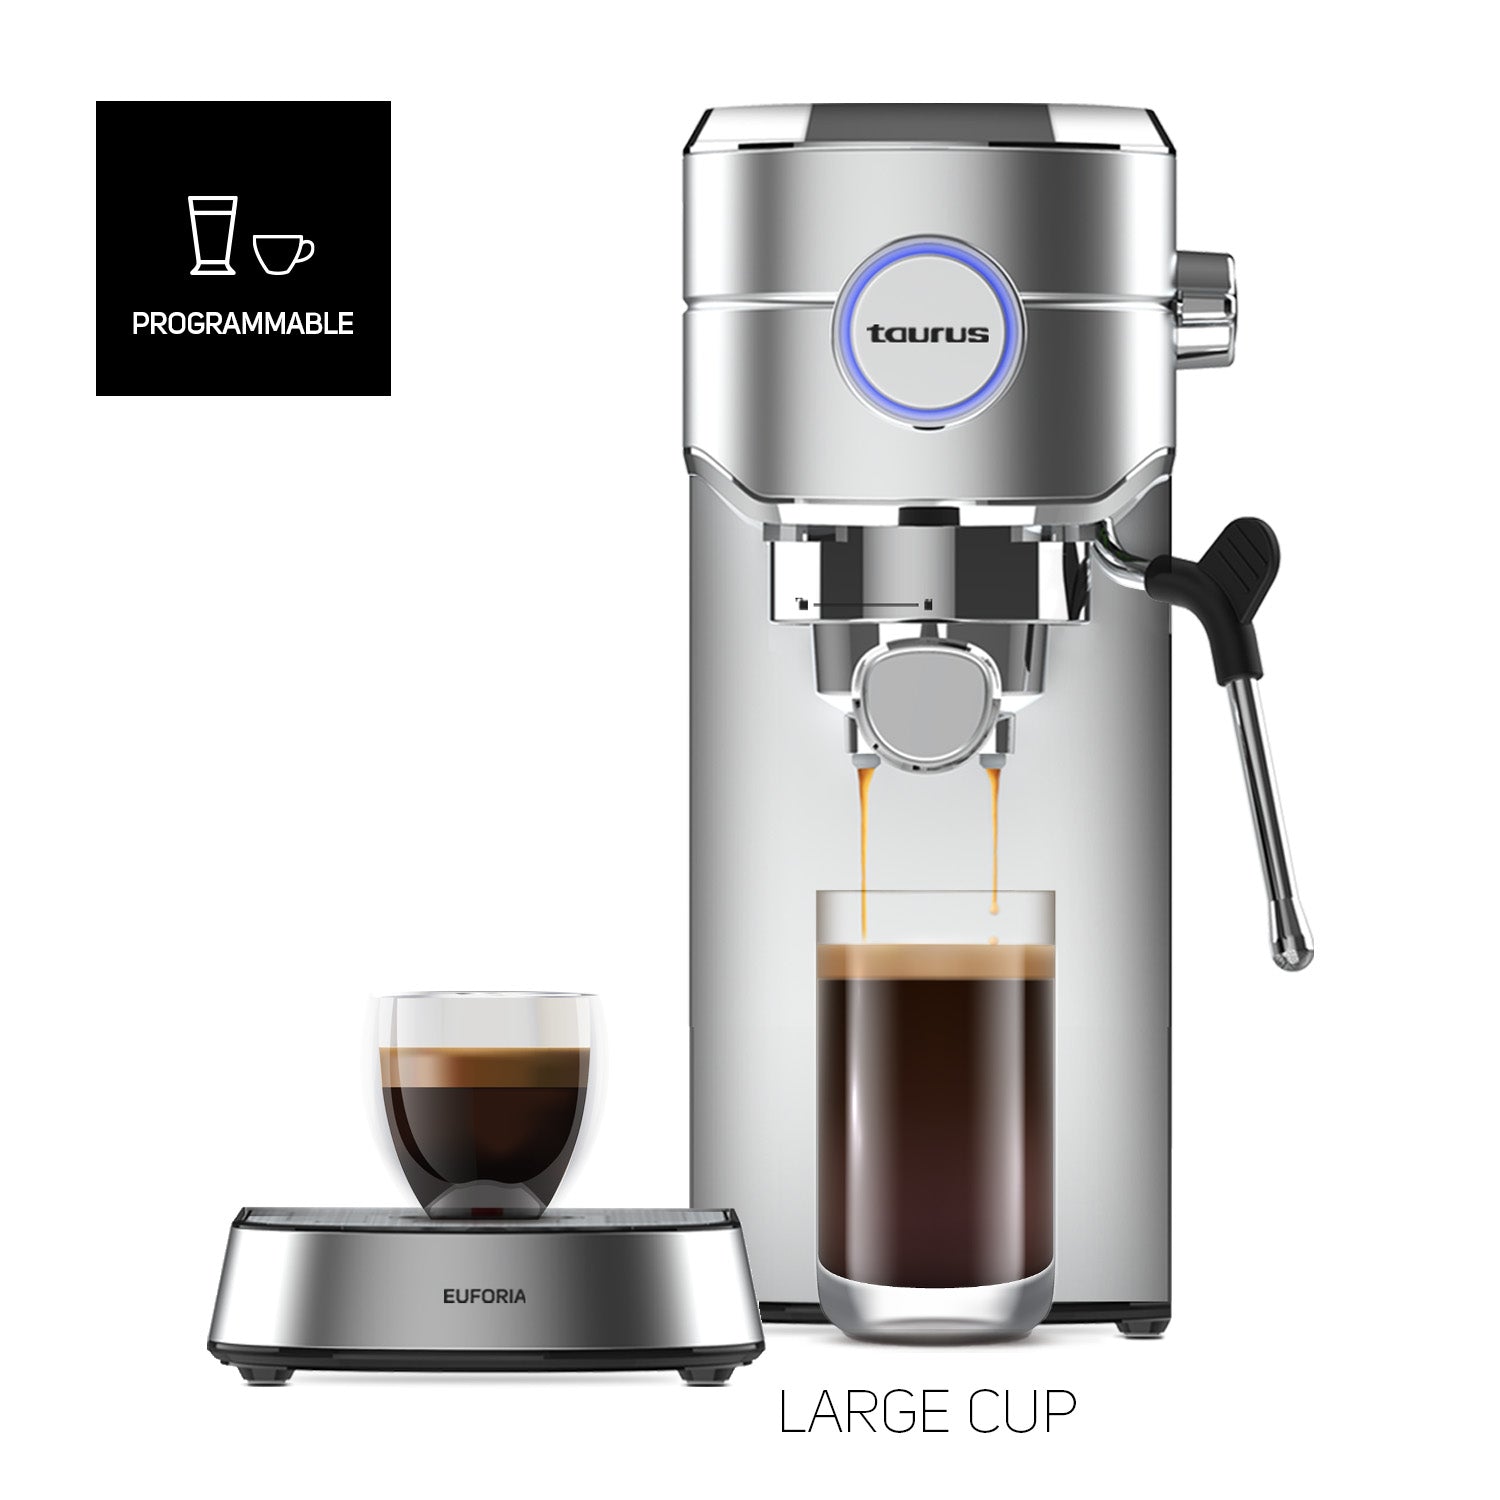 cafetera, cafetera espresso, cafeteras, cafeteras espresso, maquina de cafe, maquinas de cafe, cafetera de cafe molido, cafeteras de cafe molido, cafetera cafe, cafeteras cafe,